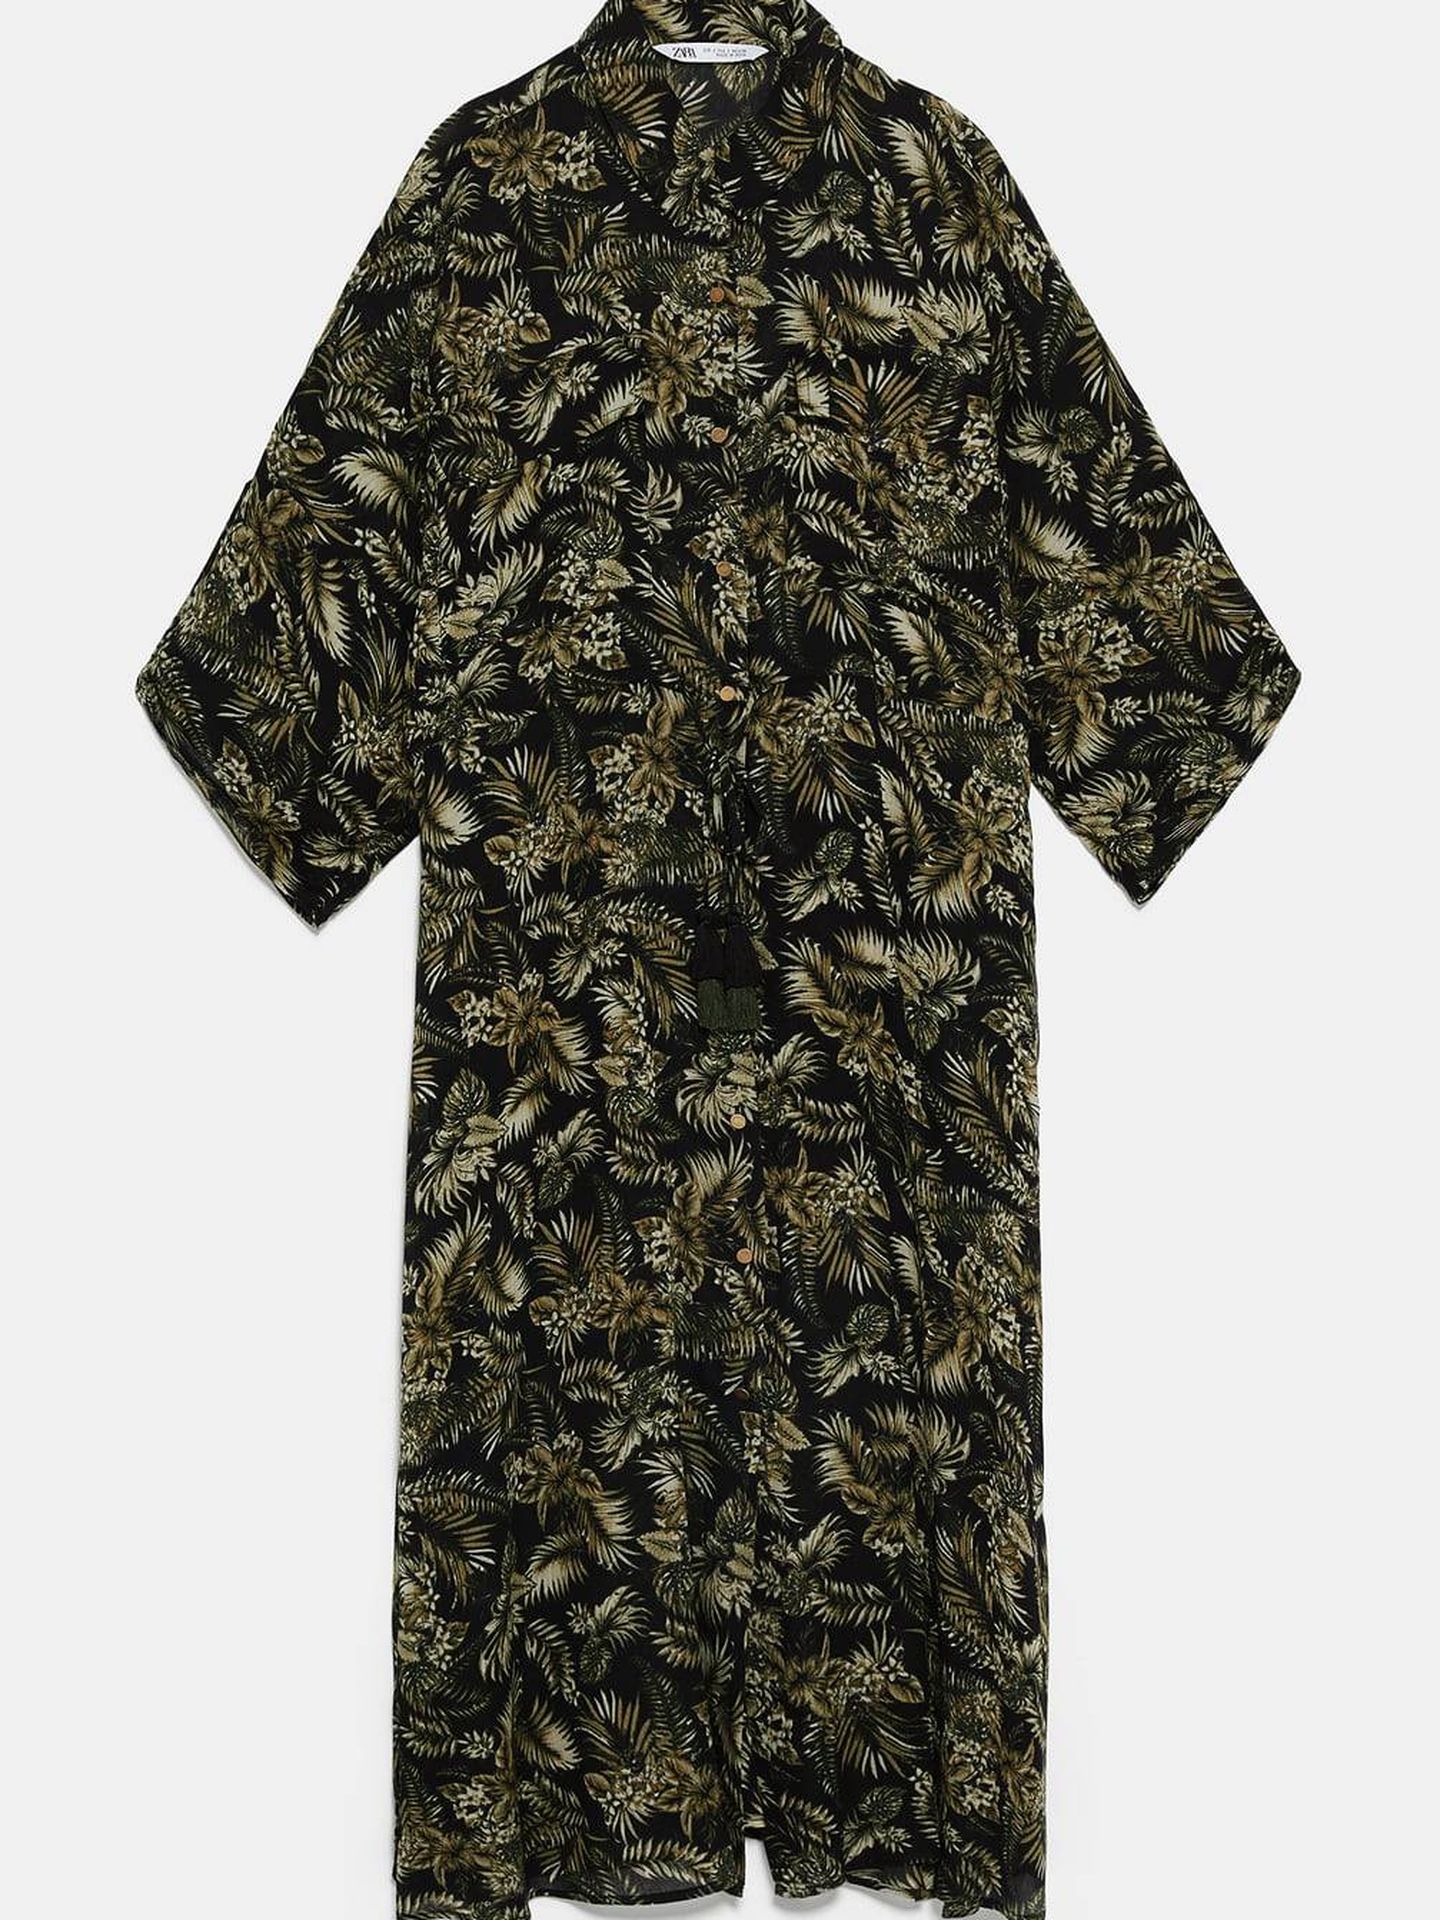 El vestido de Vicky tal y como aparece en la shop online de Zara. (Cortesía)